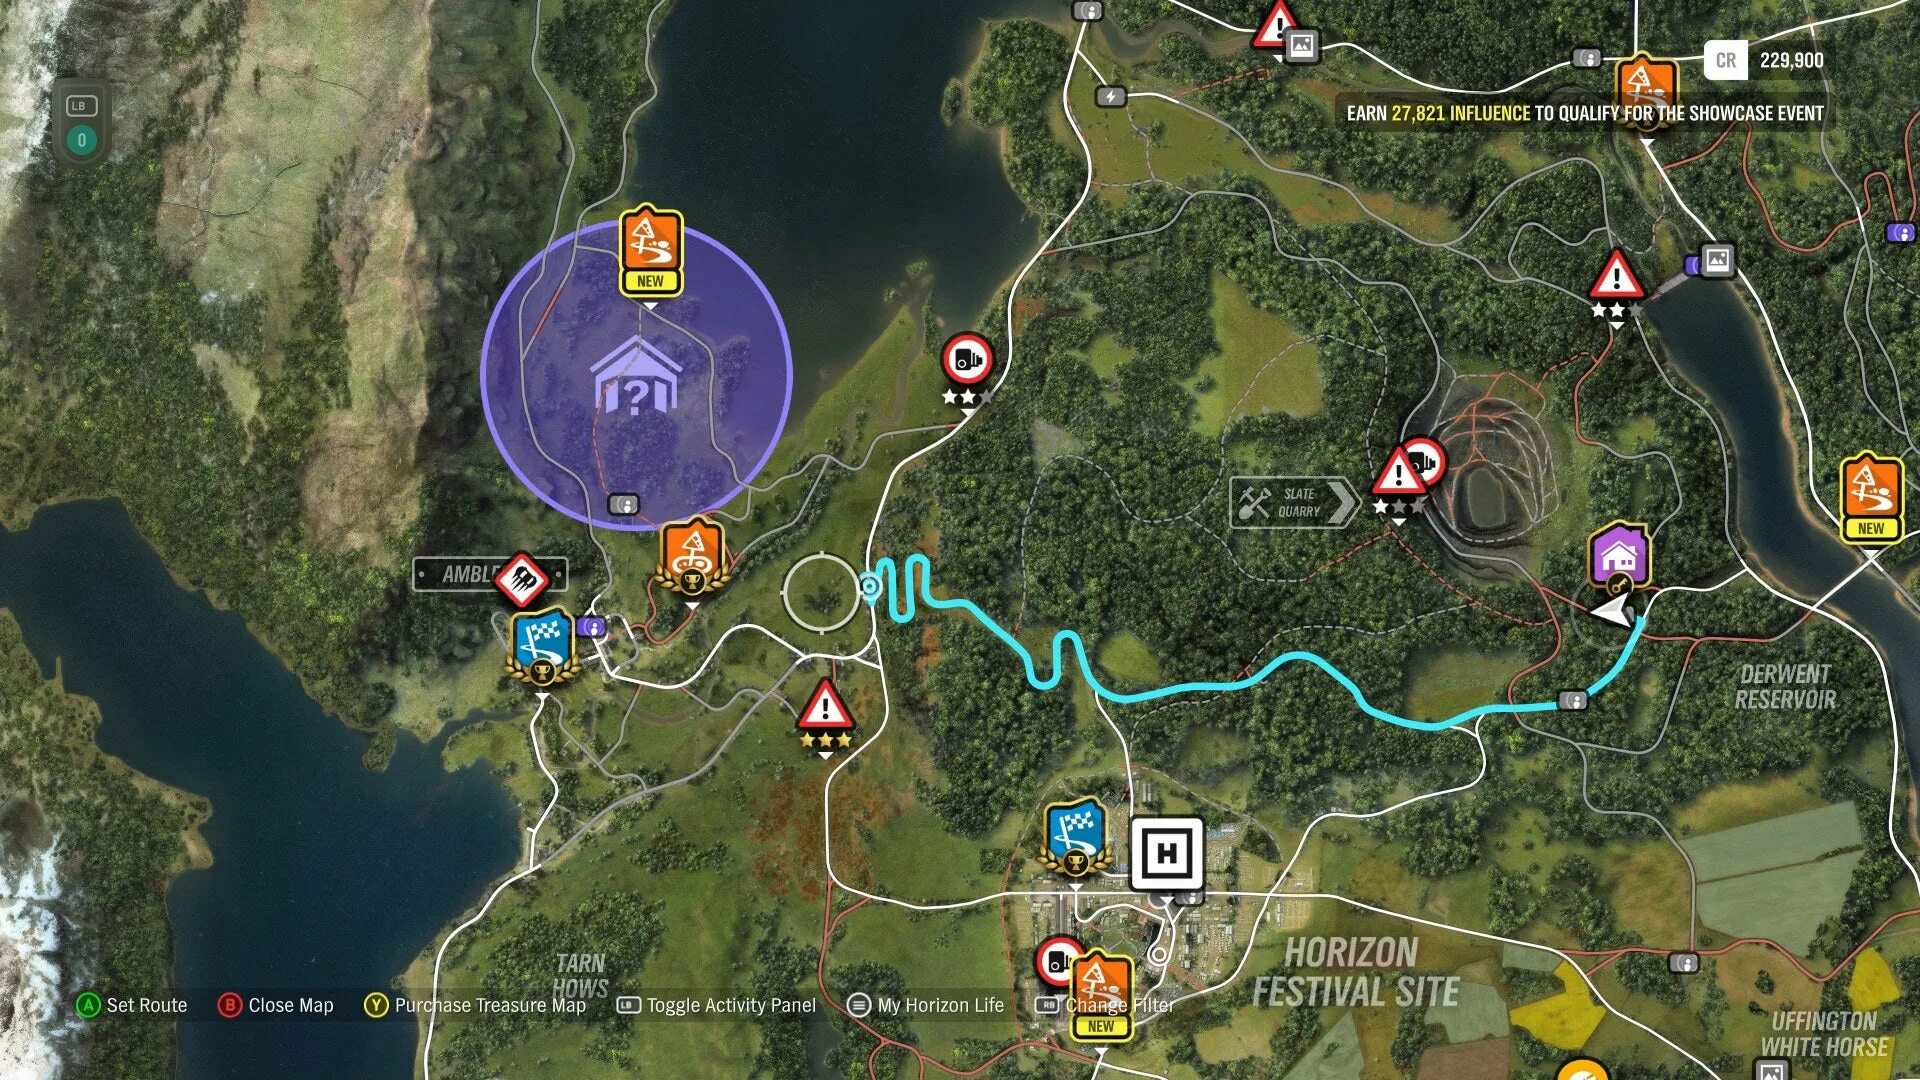 Уффингтонская белая лошадь forza horizon 4. Эмблсайд Forza Horizon 4. Раритеты Forza Horizon 4. Парк развлечений грязьфилд Forza Horizon 4 на карте. Карта всех домов в Forza Horizon 4.